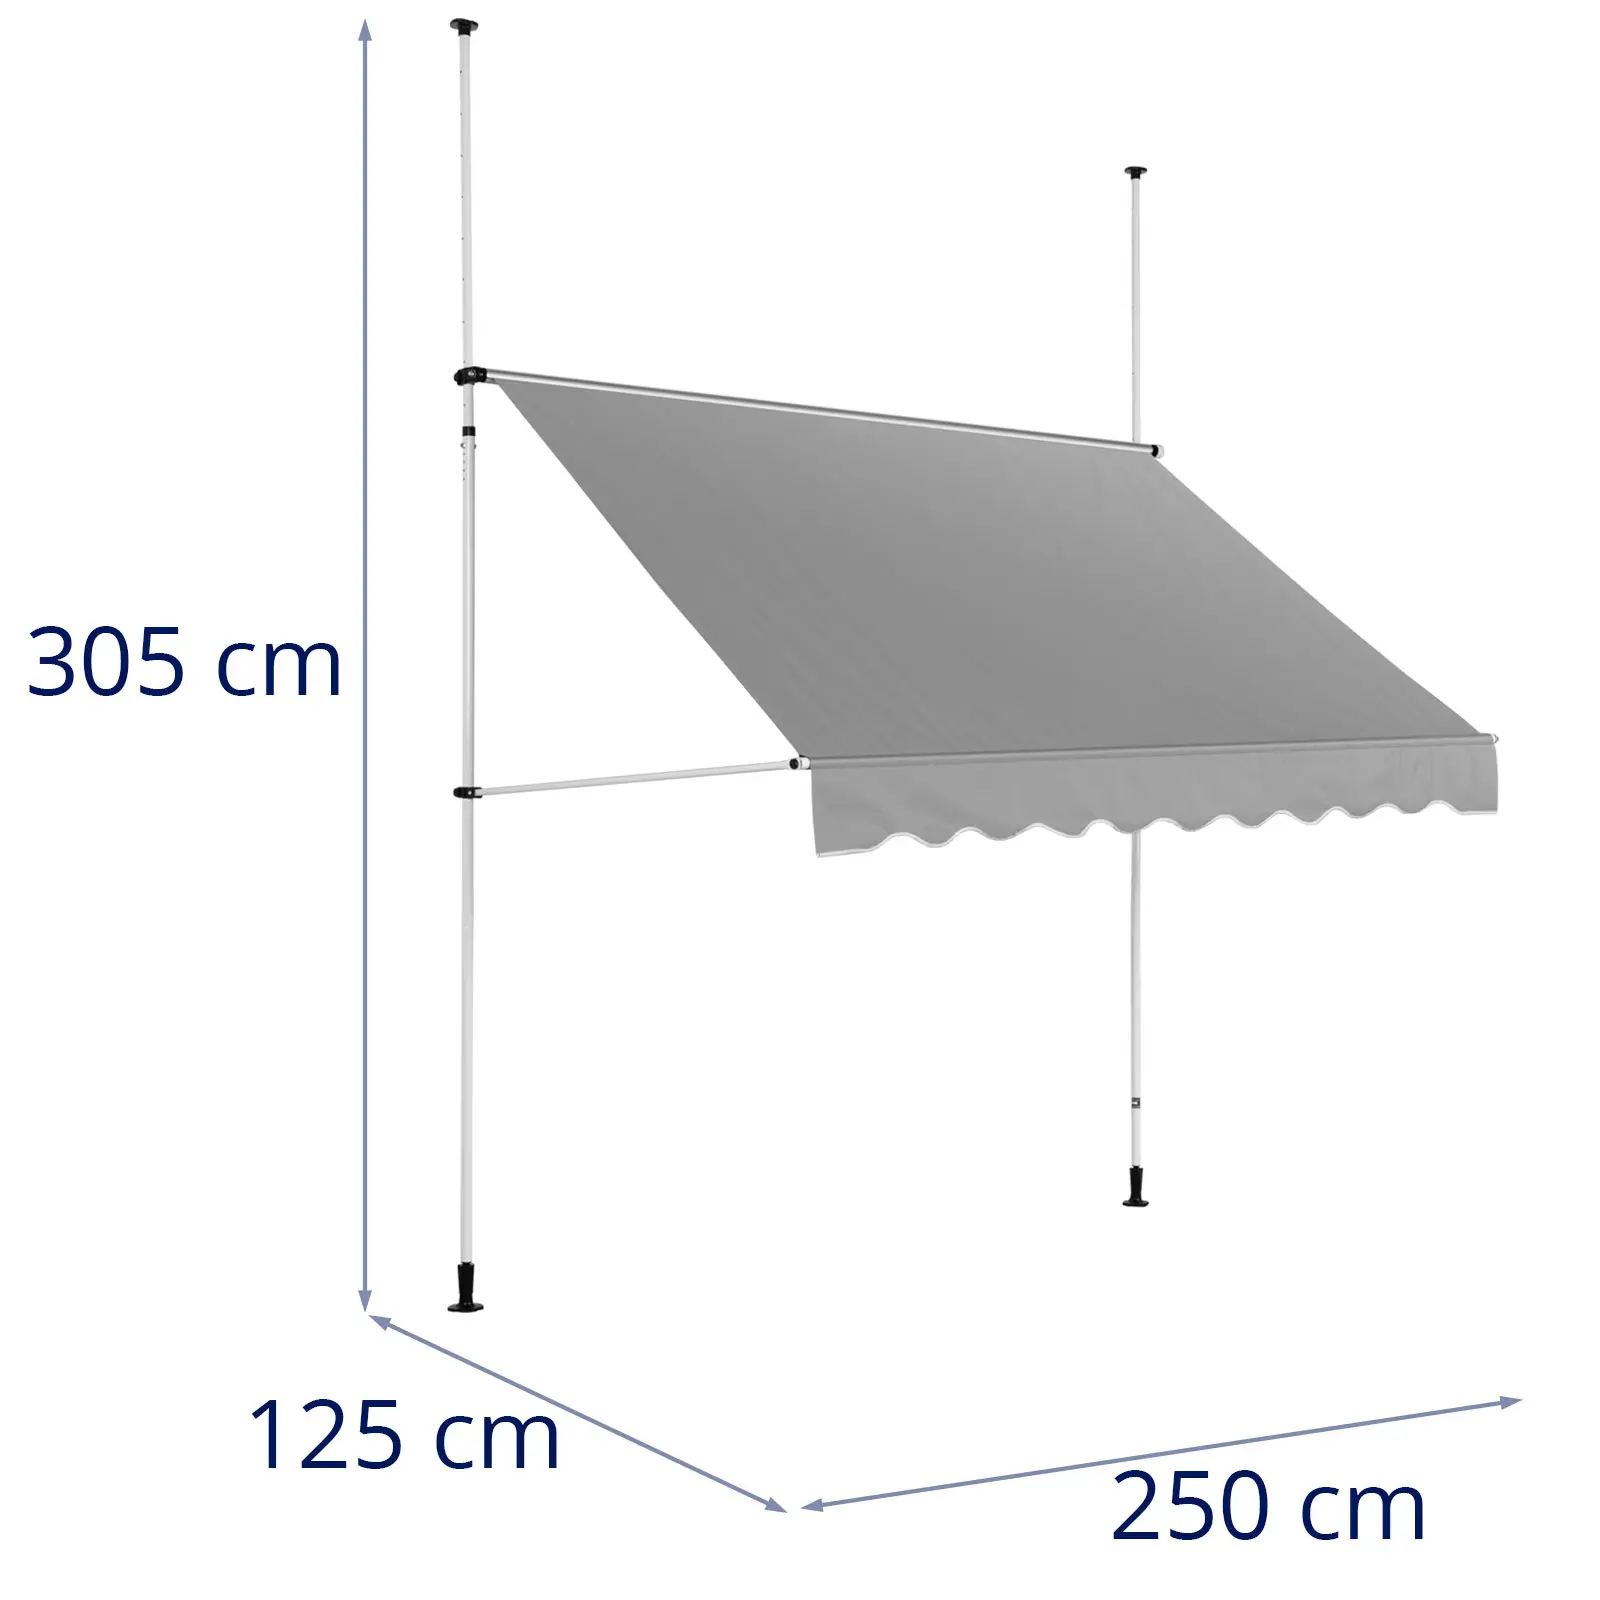 Tenda da sole a morsetto - 2 - 3,1 m - 250 x 120 cm - Resistente ai raggi UV - Grigio antracite, bianco